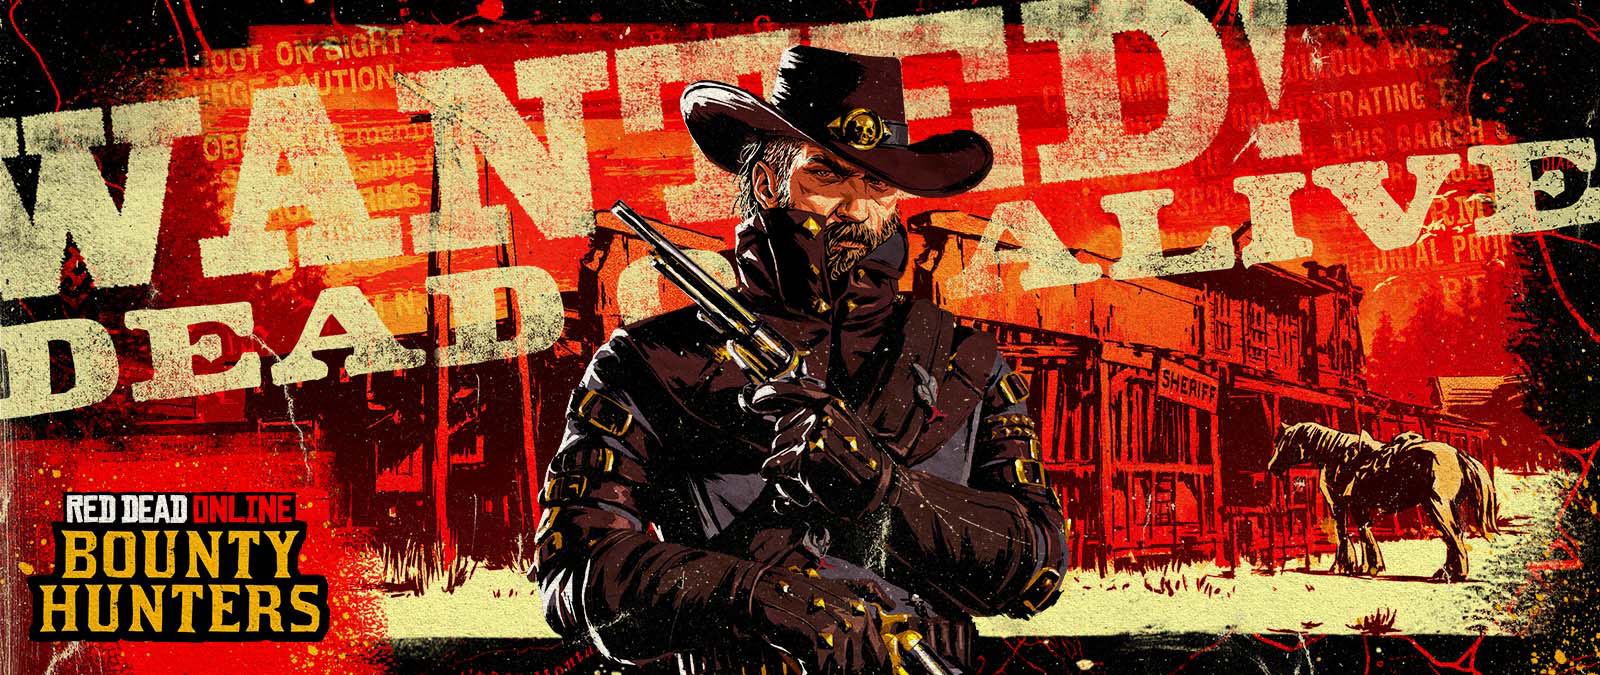 Red Dead Online: Bounty Hunters. Hľadá sa! Živý alebo mŕtvy. Kovboj drží dva revolvery pred starou budovou šerifa.